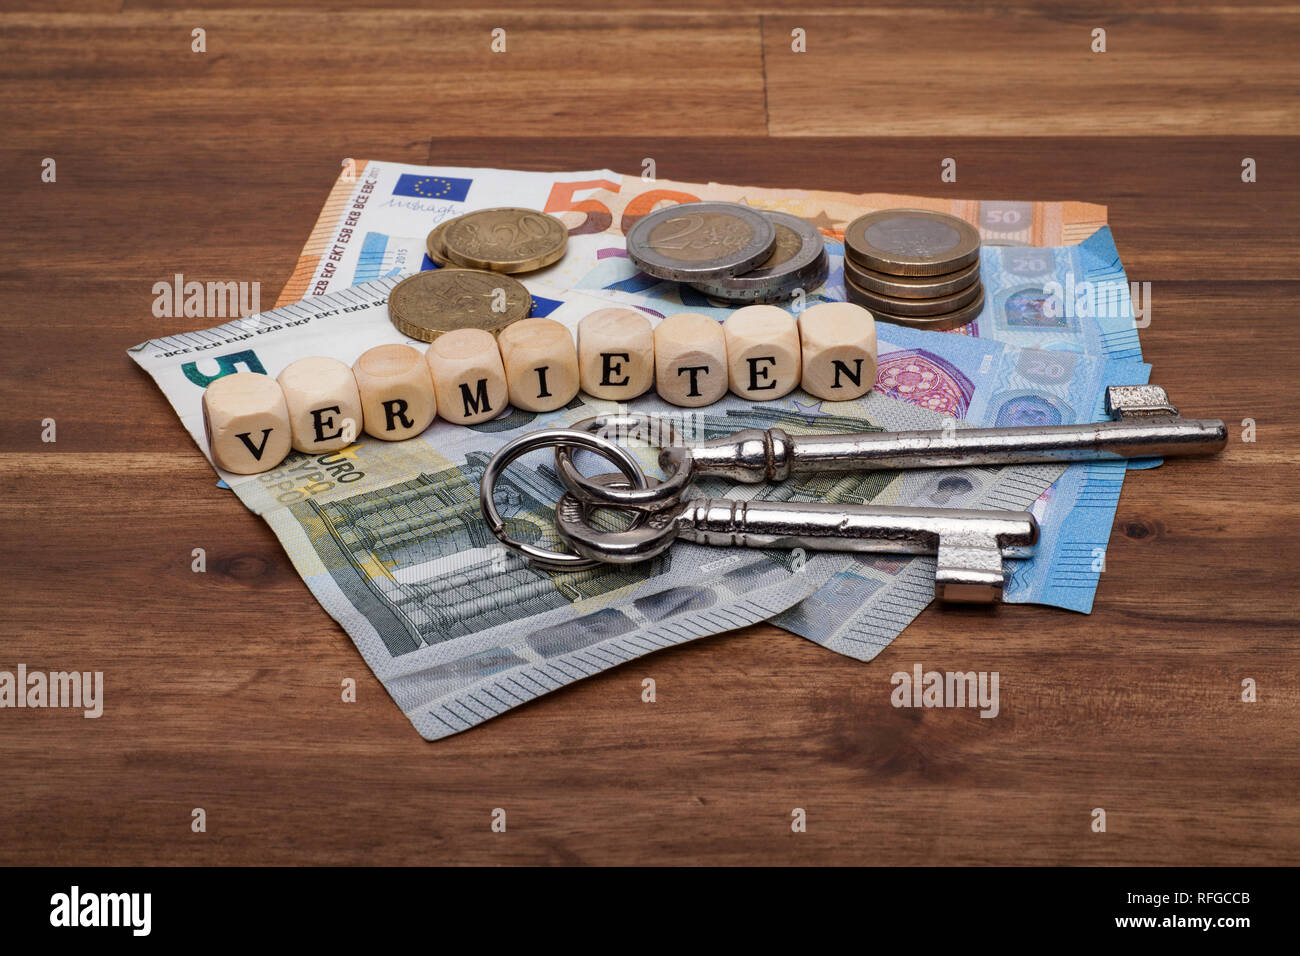 Die Euro Geldscheine Münzen und Schlüssel liegen auf dem Tisch mit dem Wort Vermieten Stock Photo